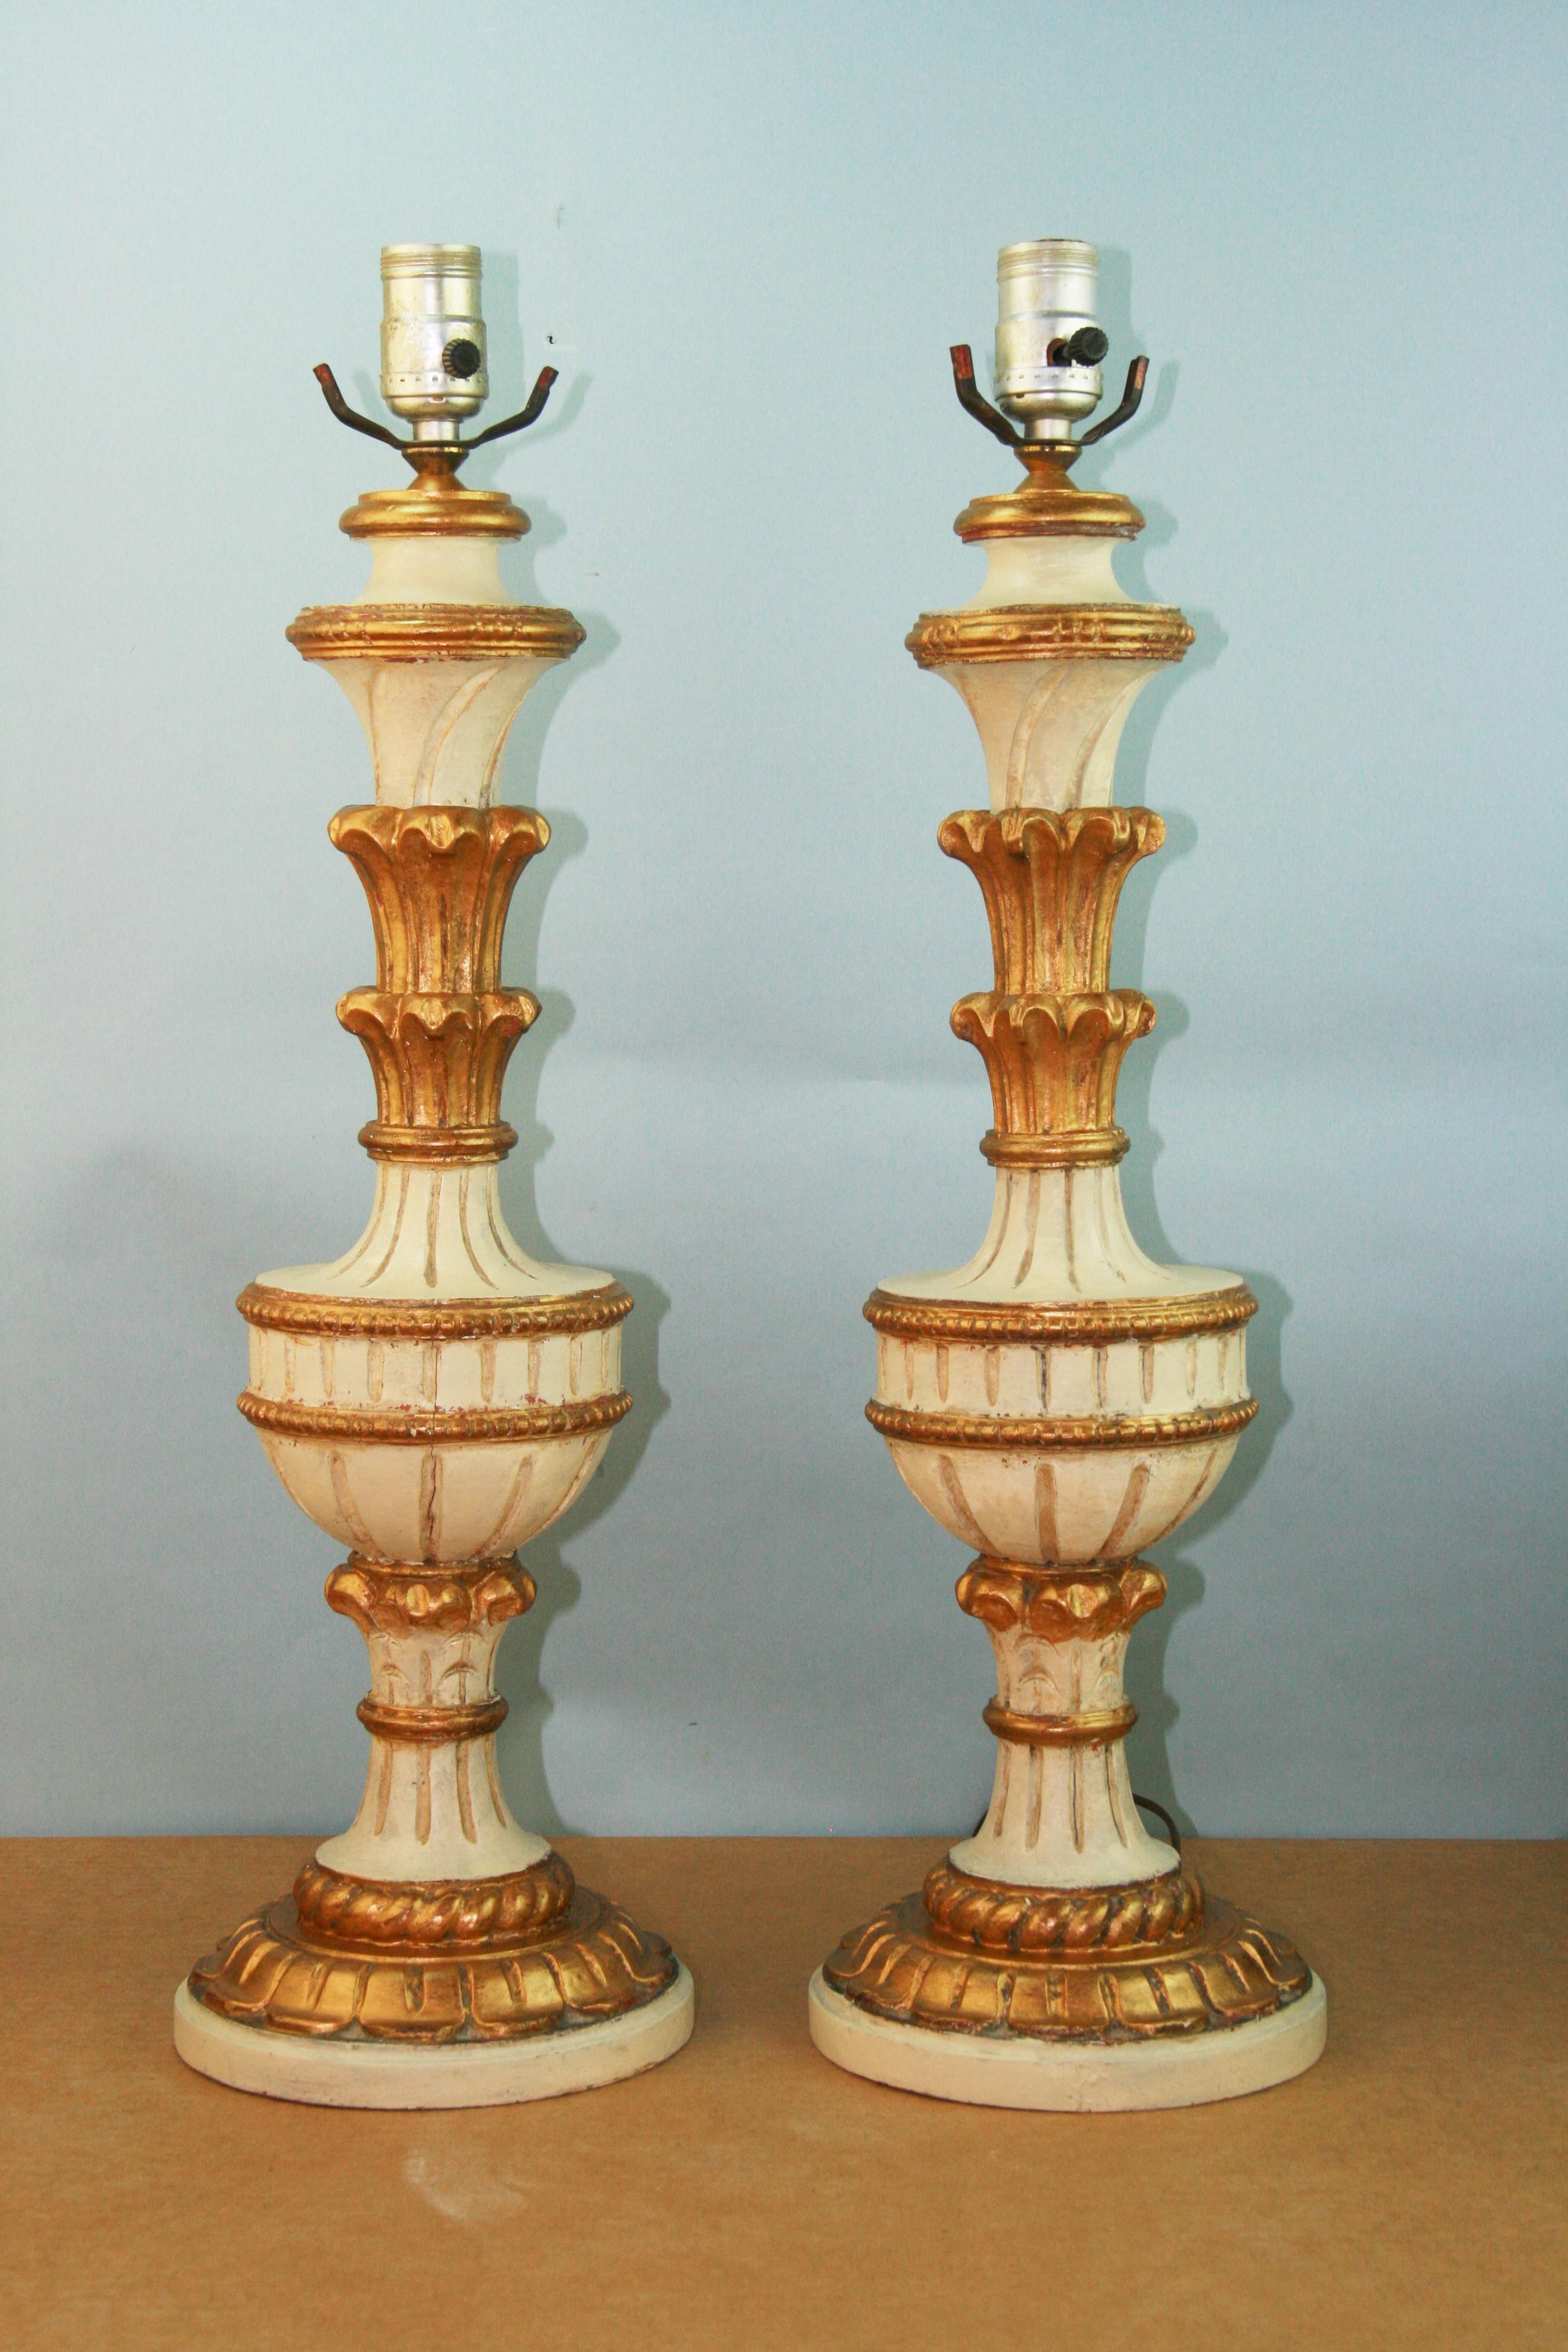 3-949 Paire de lampes italiennes en bois sculpté et doré 
Câblage d'origine en état de marche.
Egalement disponible une lampe en bois supplémentaire $850